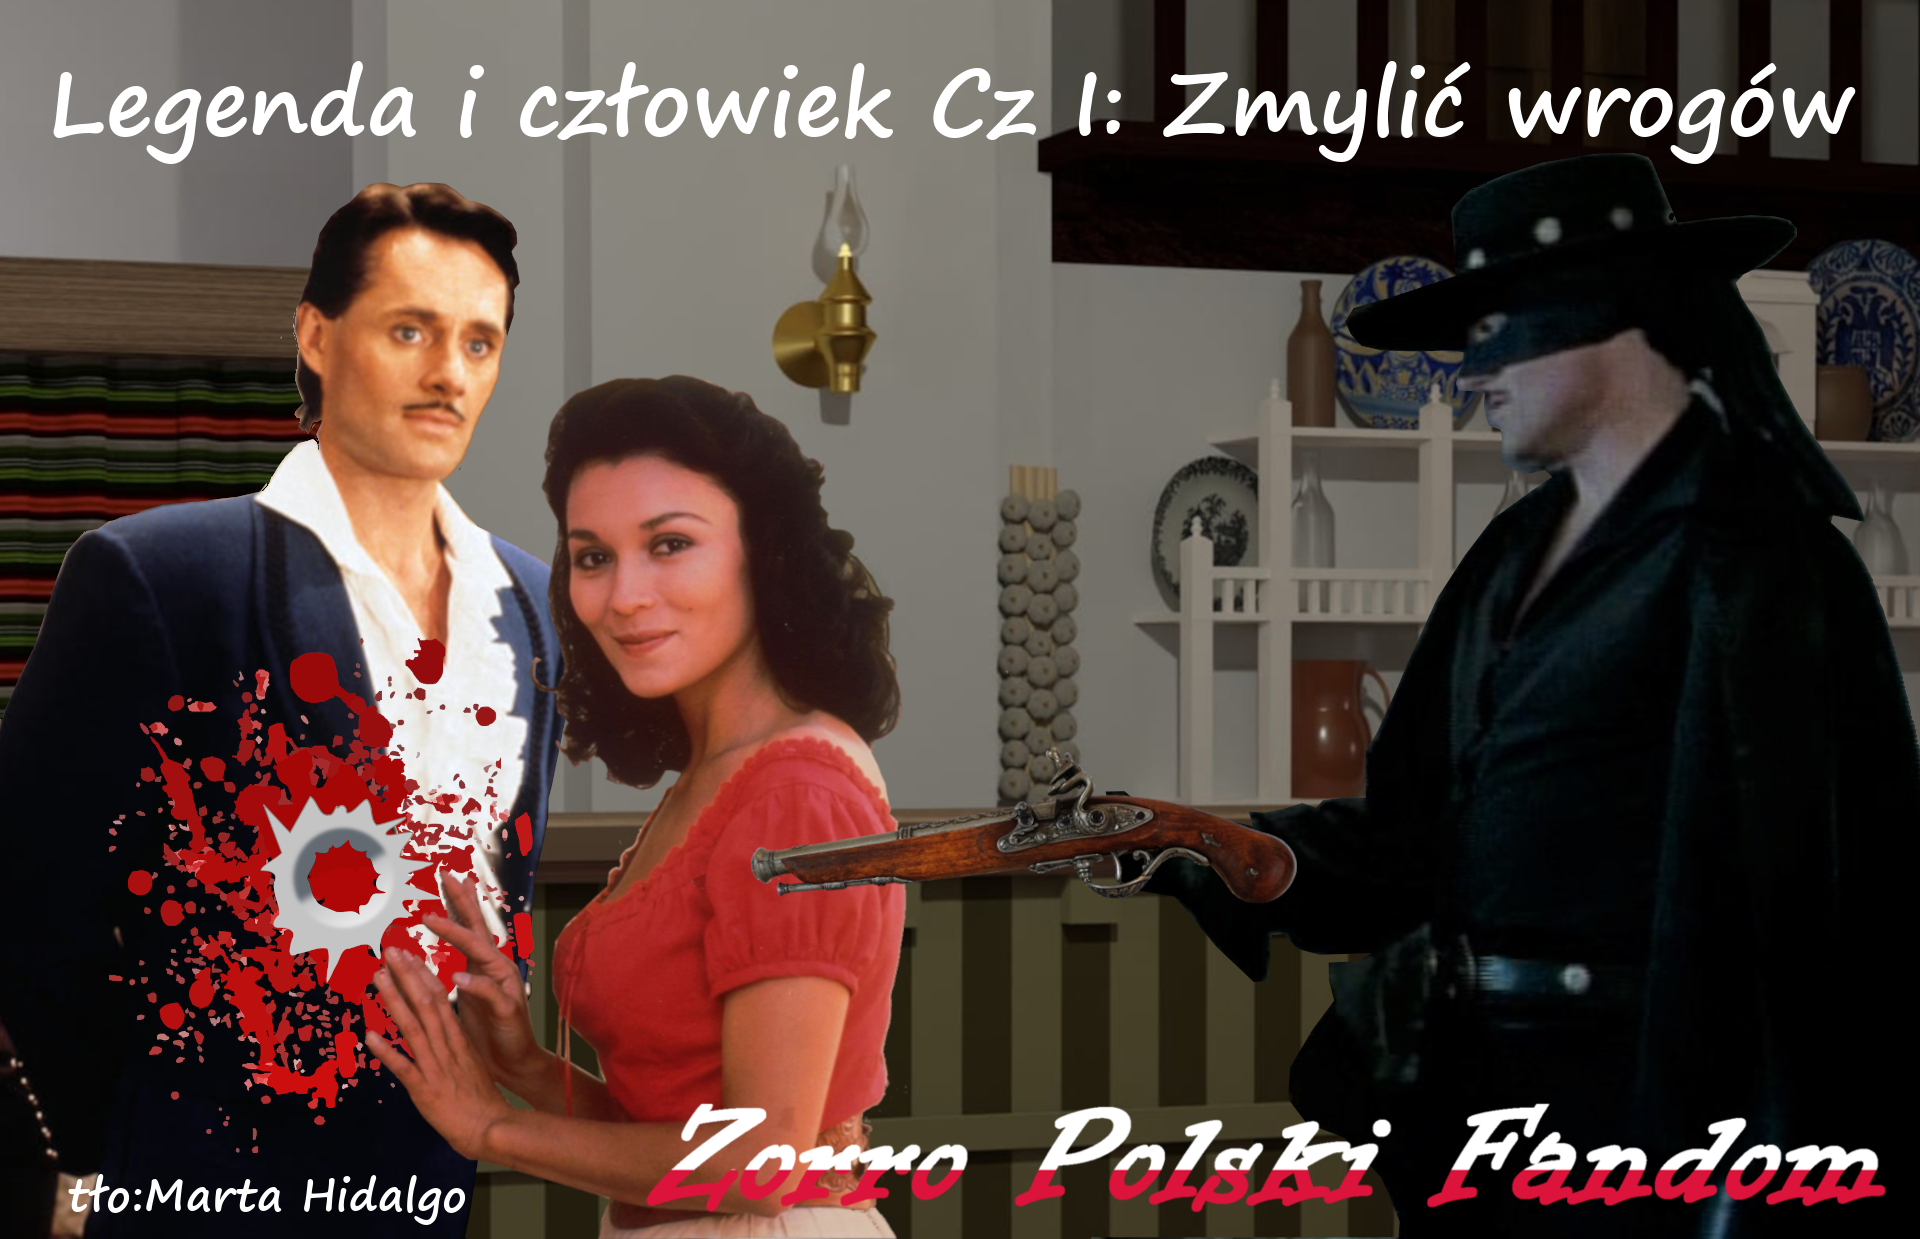 wp-content/uploads/2021/11/Zorro-fiction-Legenda-i-czlowiek-Cz-I-Zmylic-wrogow.png